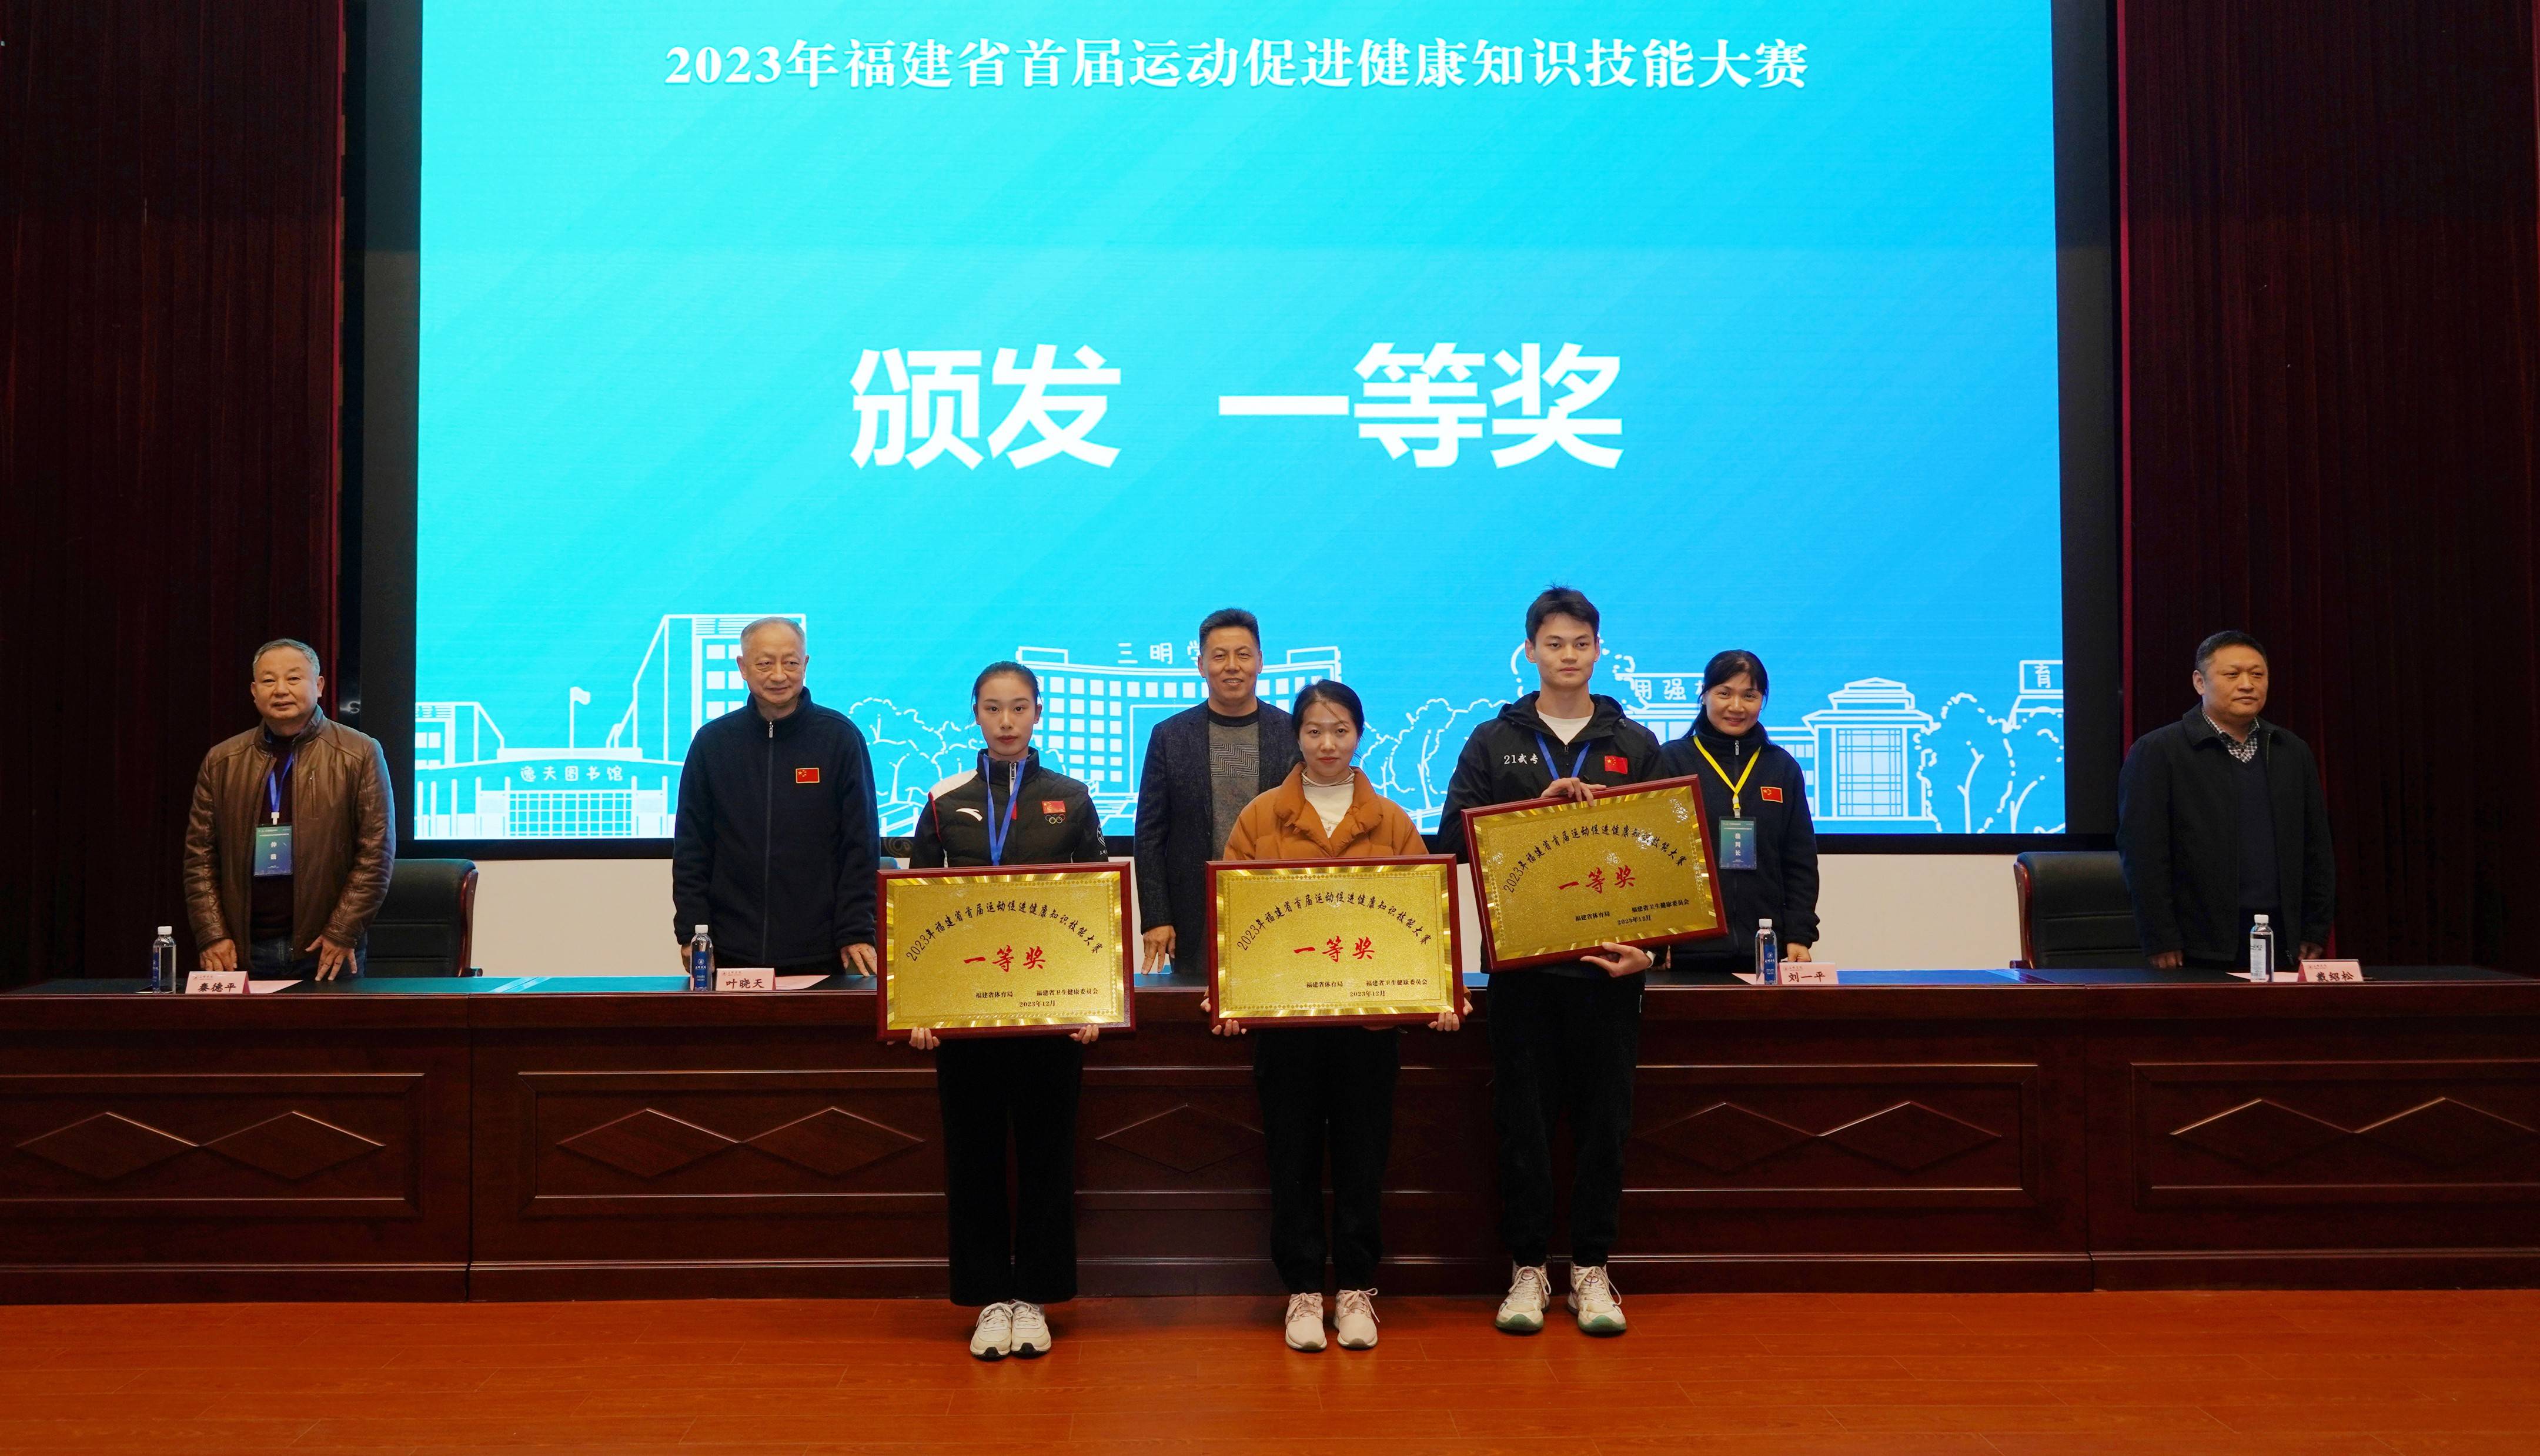 2023年福建省首届运动促进健康知识技能大赛成功举办